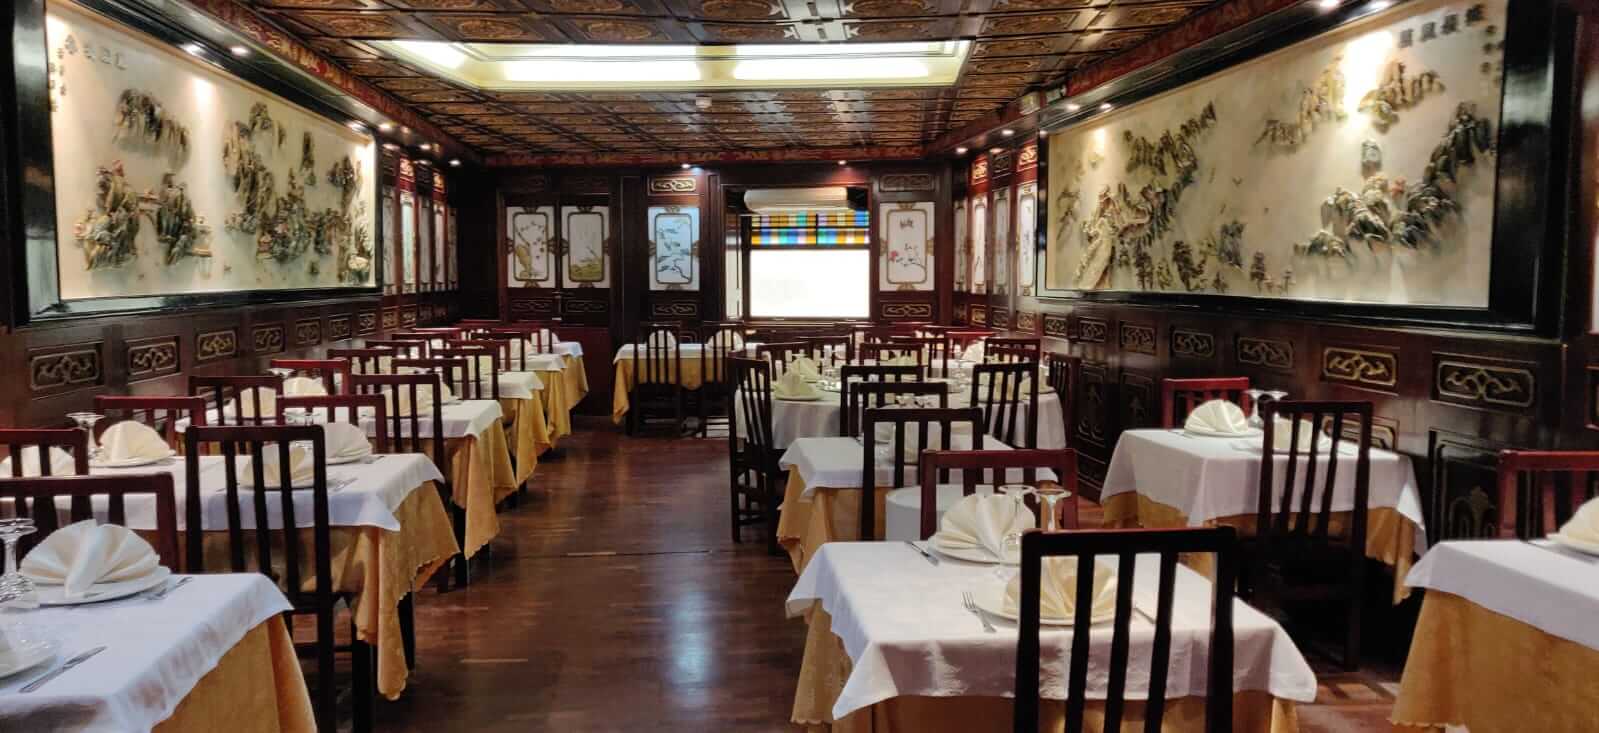 Restaurante de comida china en pleno centro de Pamplona, a tan solo 1 minuto de la Plaza del Castillo.   